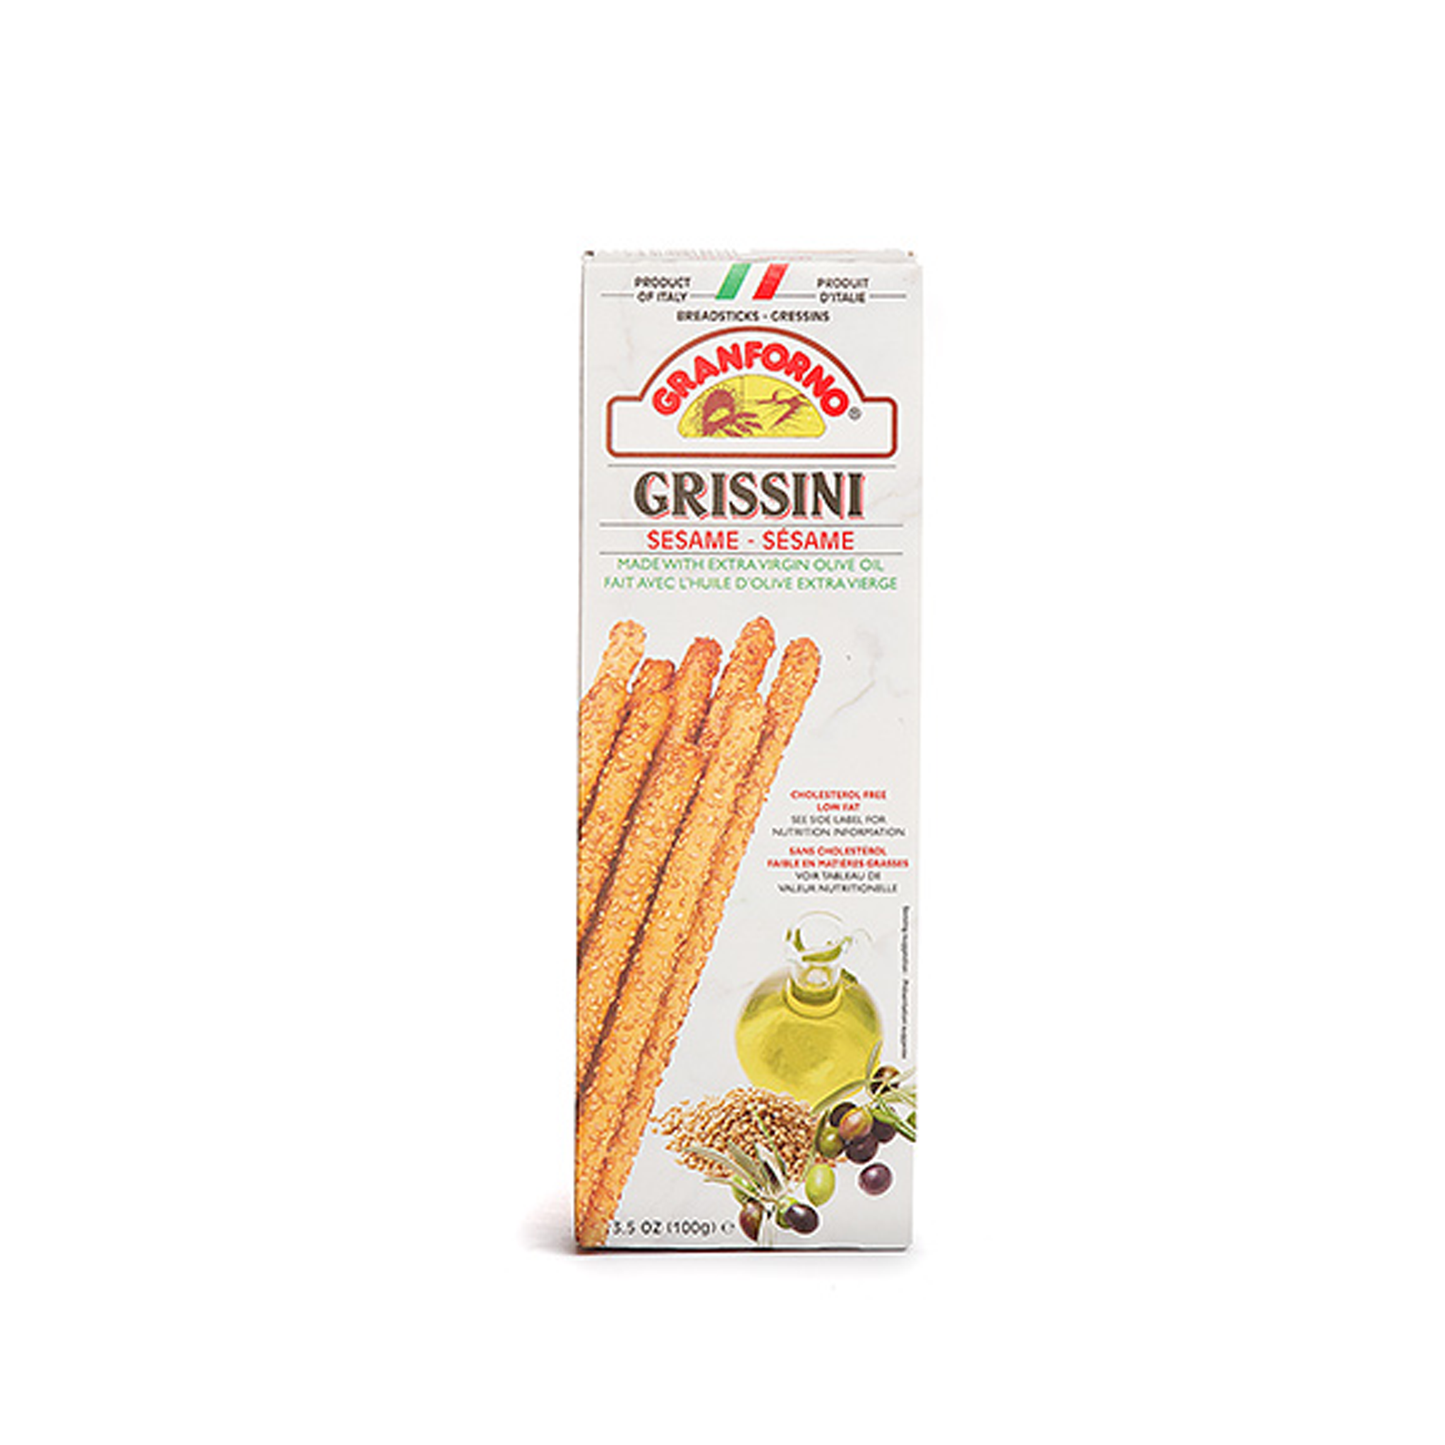 Gran Forno Grissini Sesame Breadstick